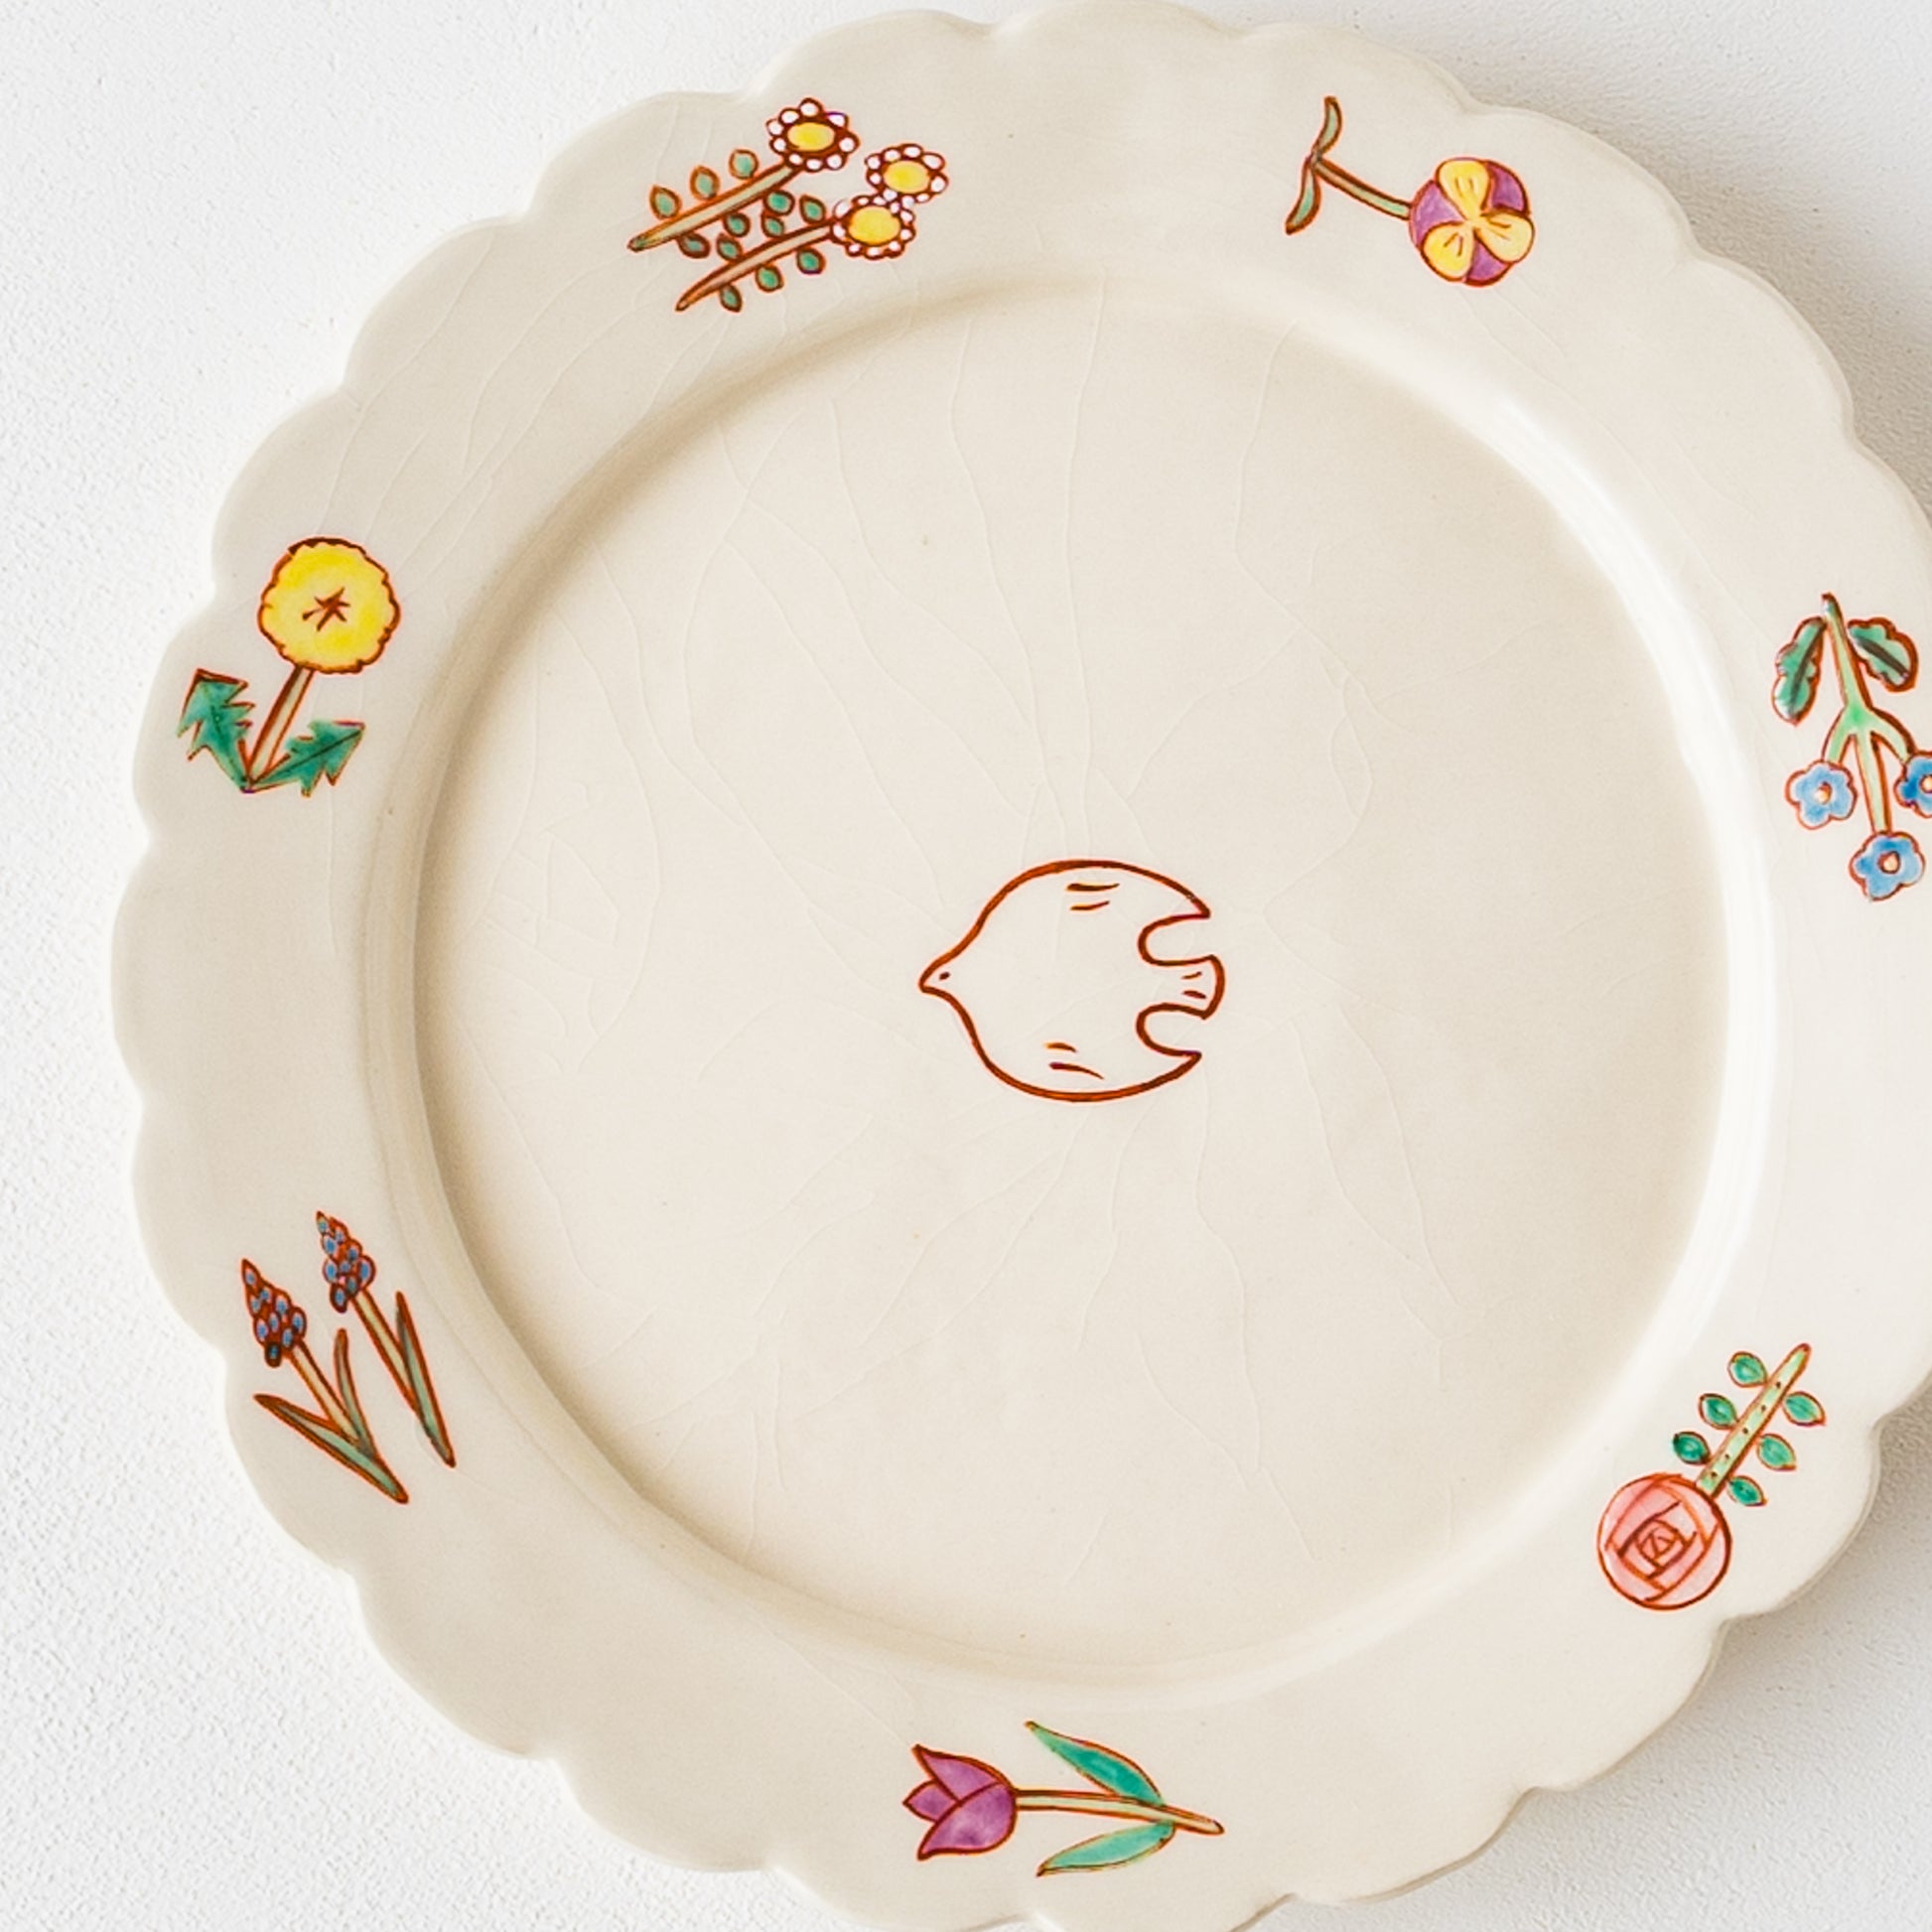 パスタやオムライスが可愛く映える長浜由起子さんの8寸小花絵付皿